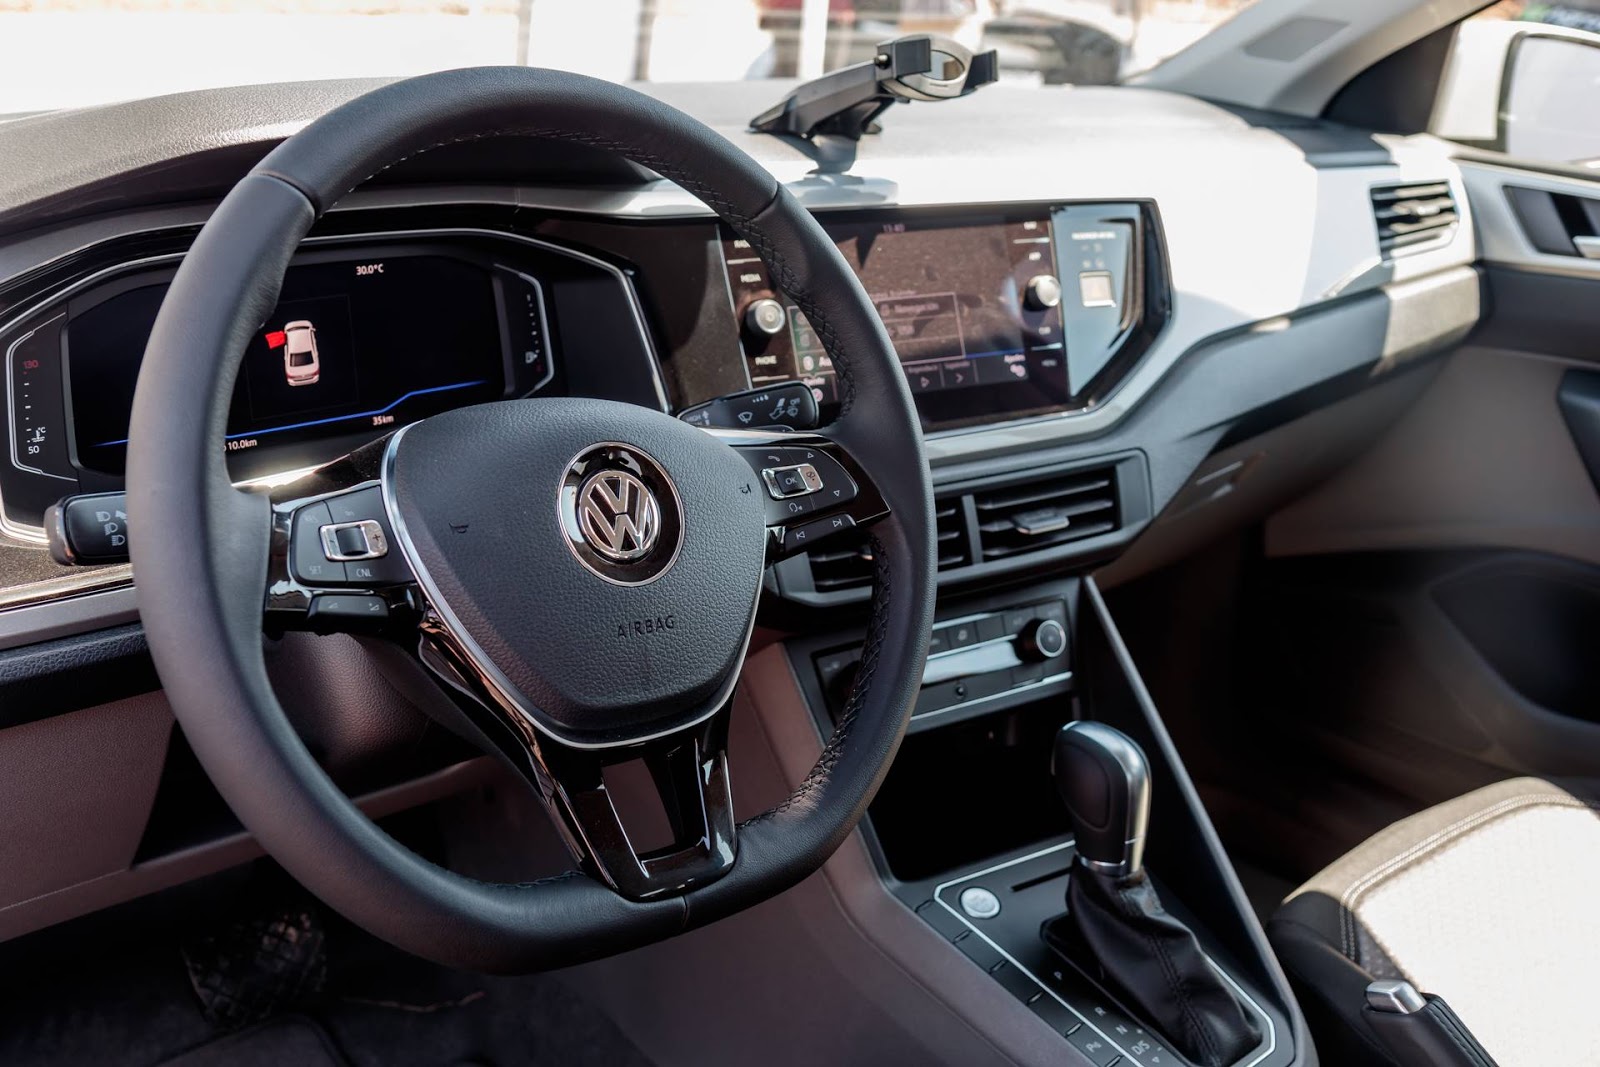 Confira nossa avaliação do Volkswagen Virtus 1.6 MSI